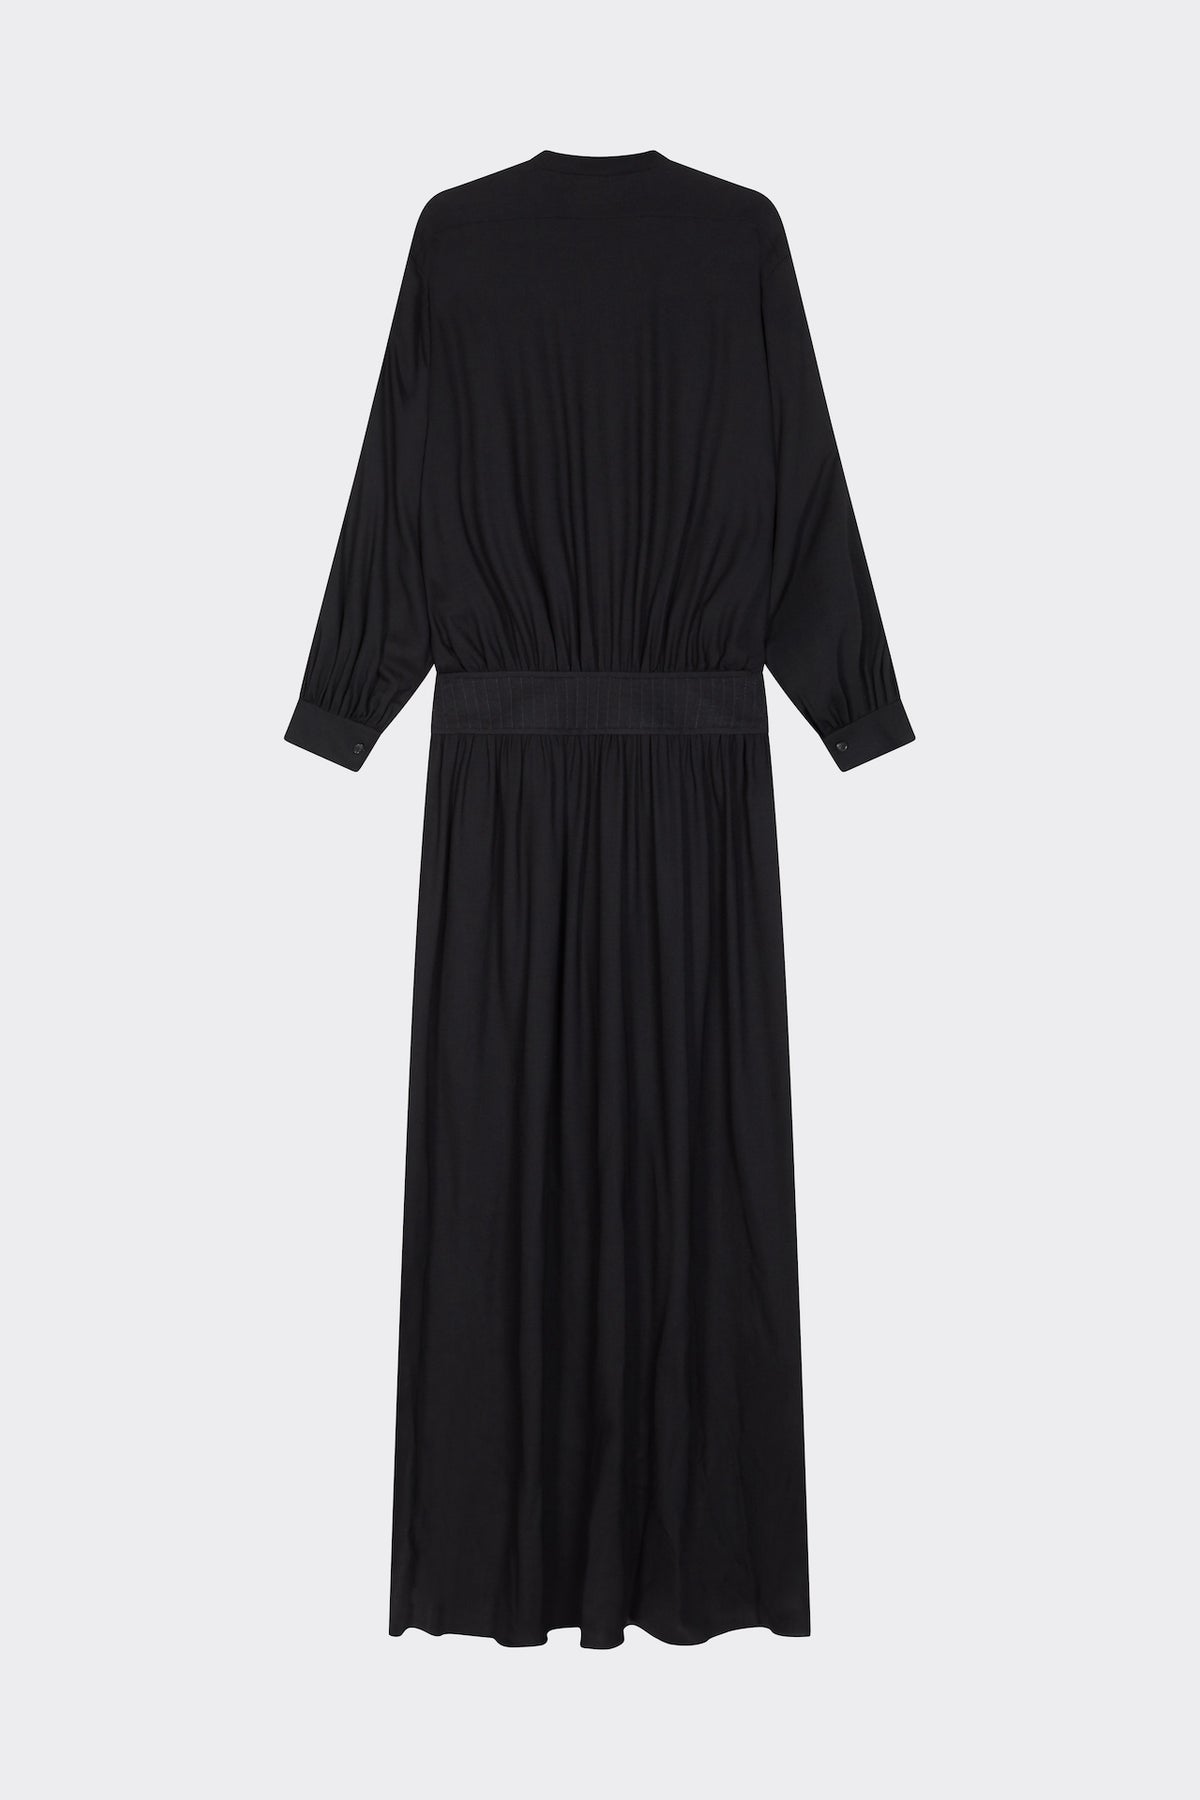 Kristina Dress in Black| Noon by Noor